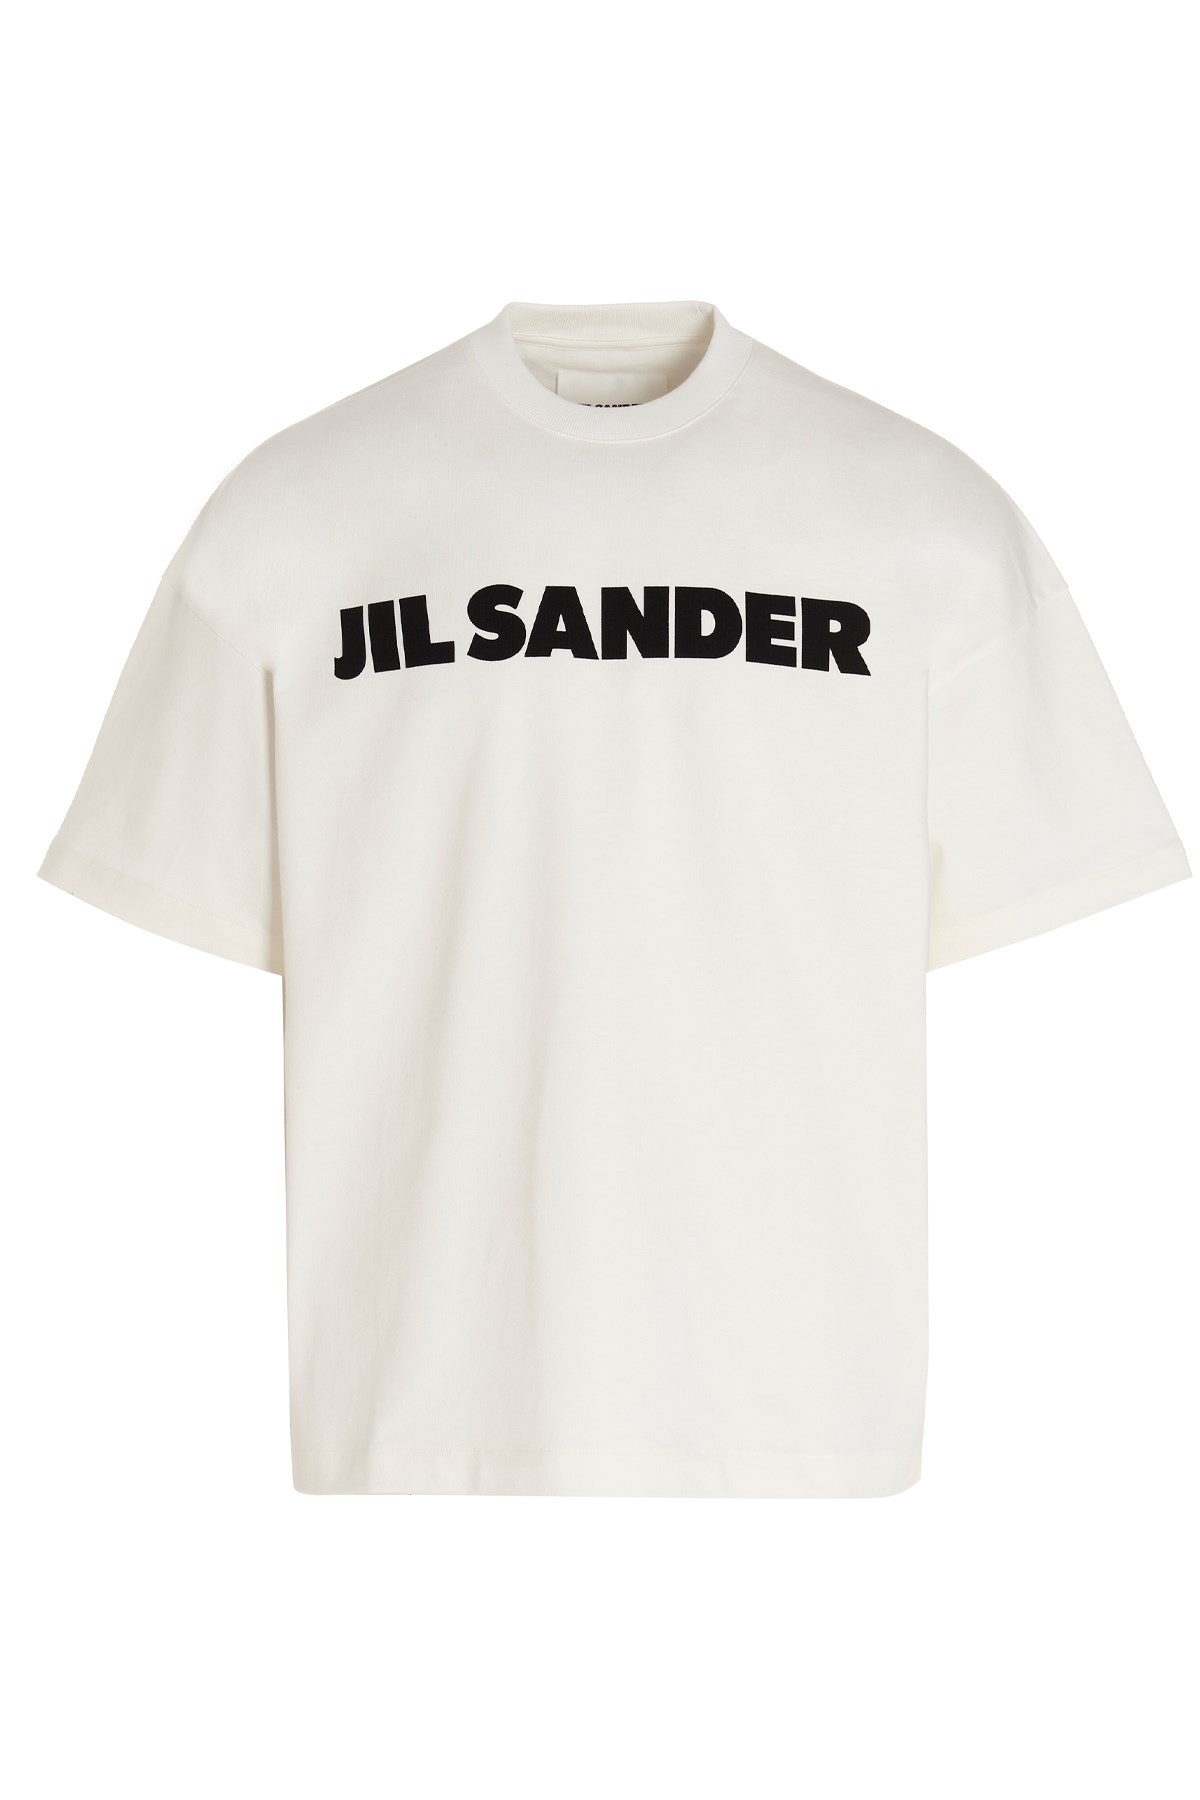 JIL SANDER Logo Print T-Shirt